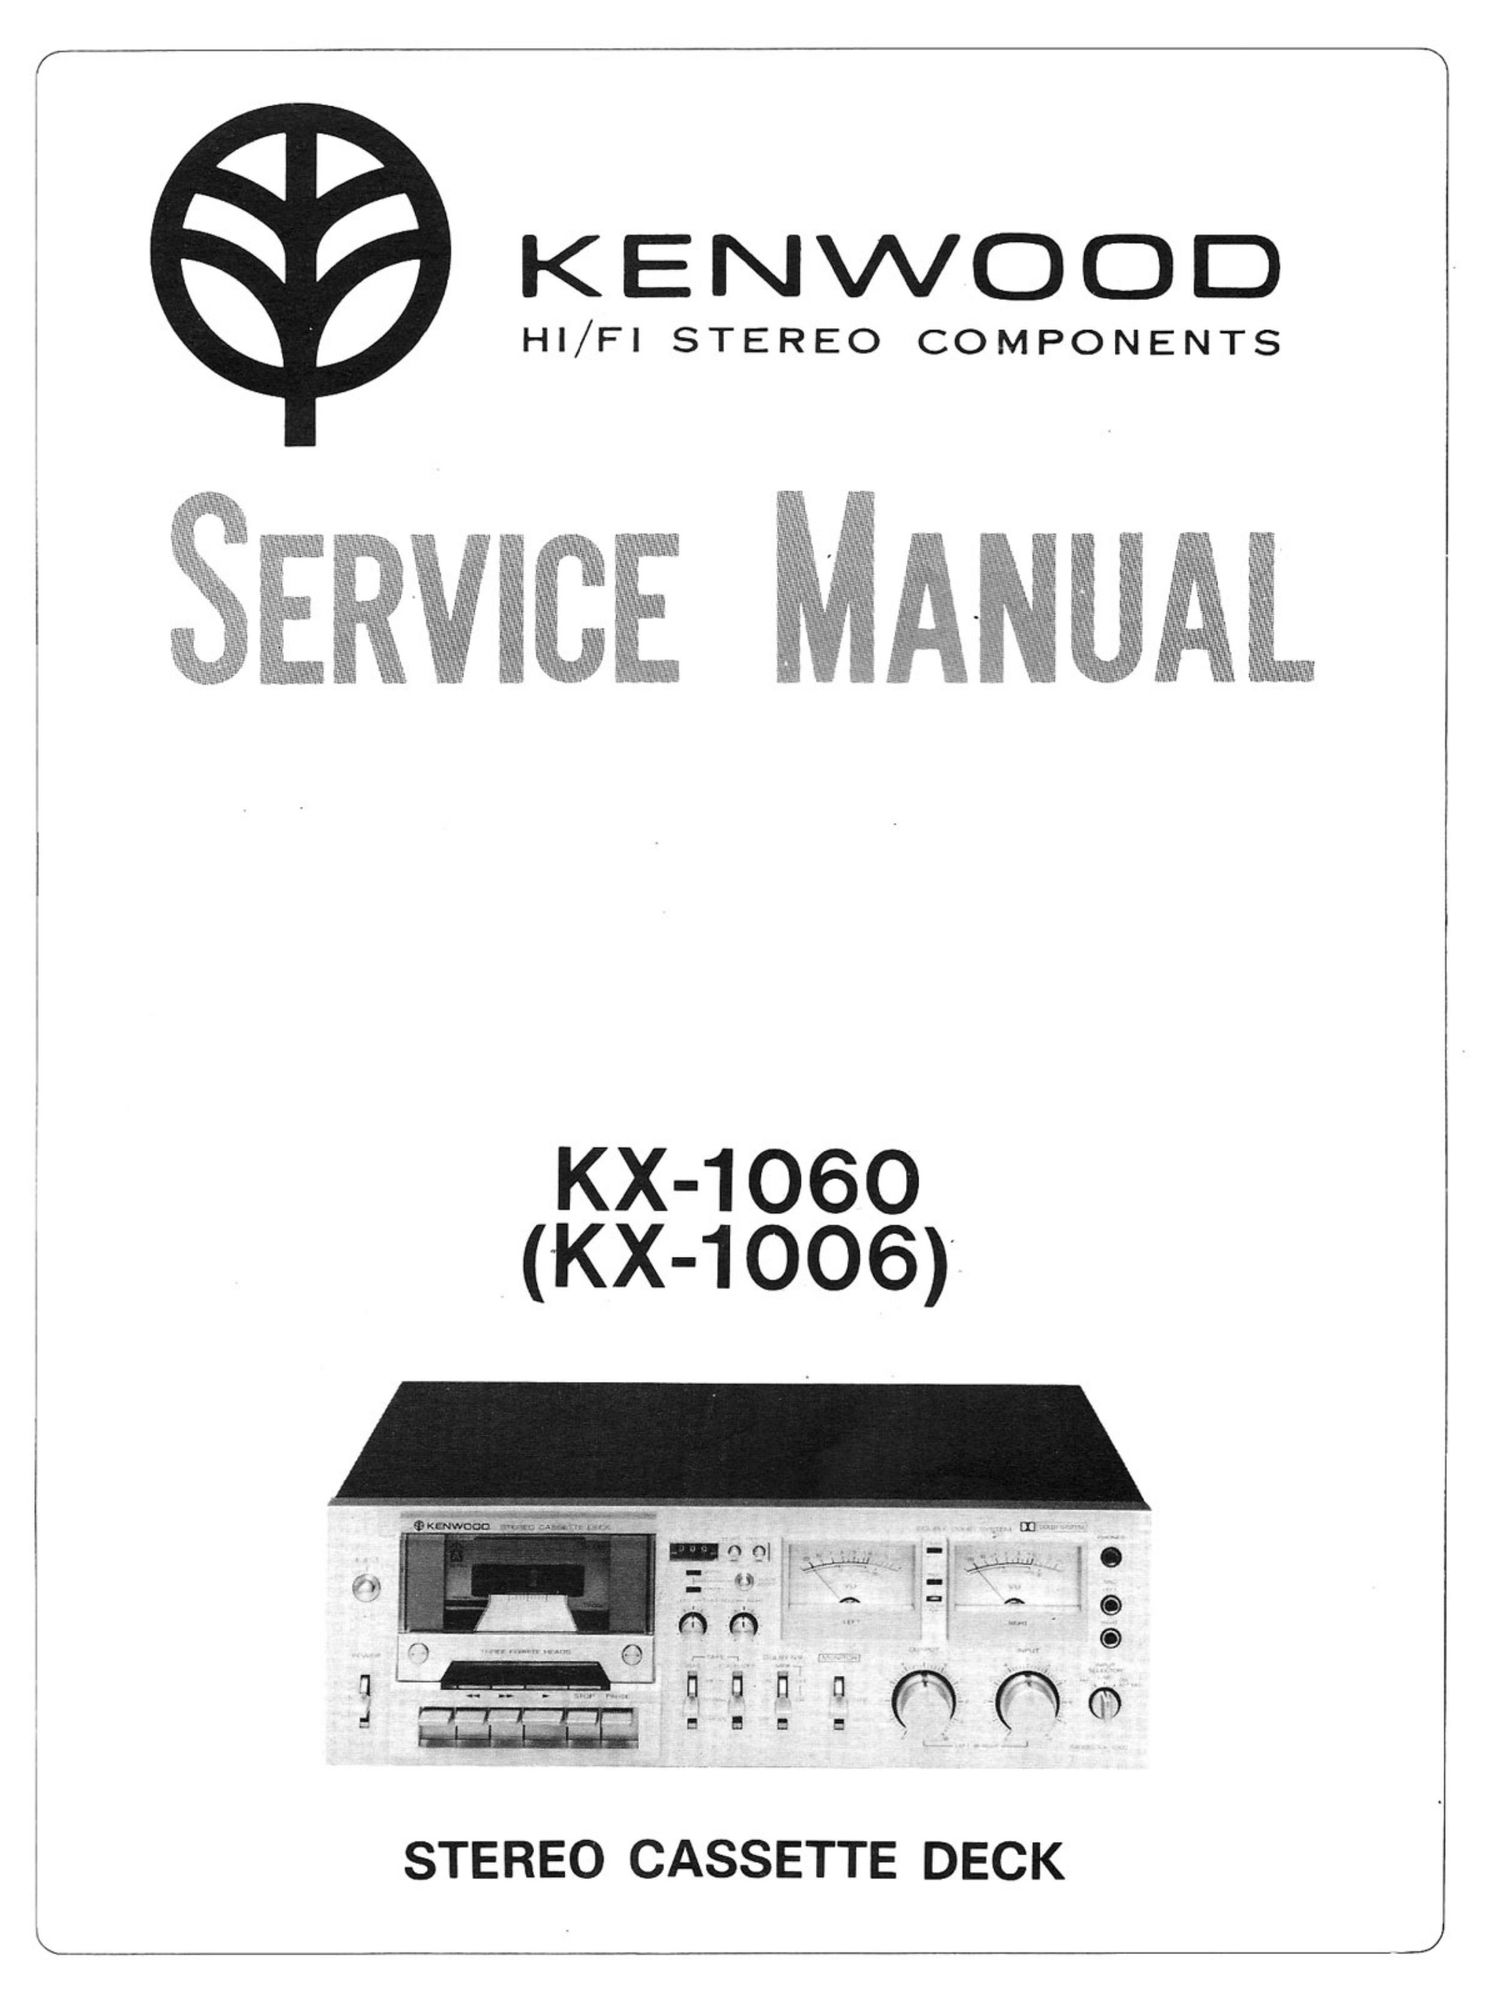 Kenwood 1006 Service Manual